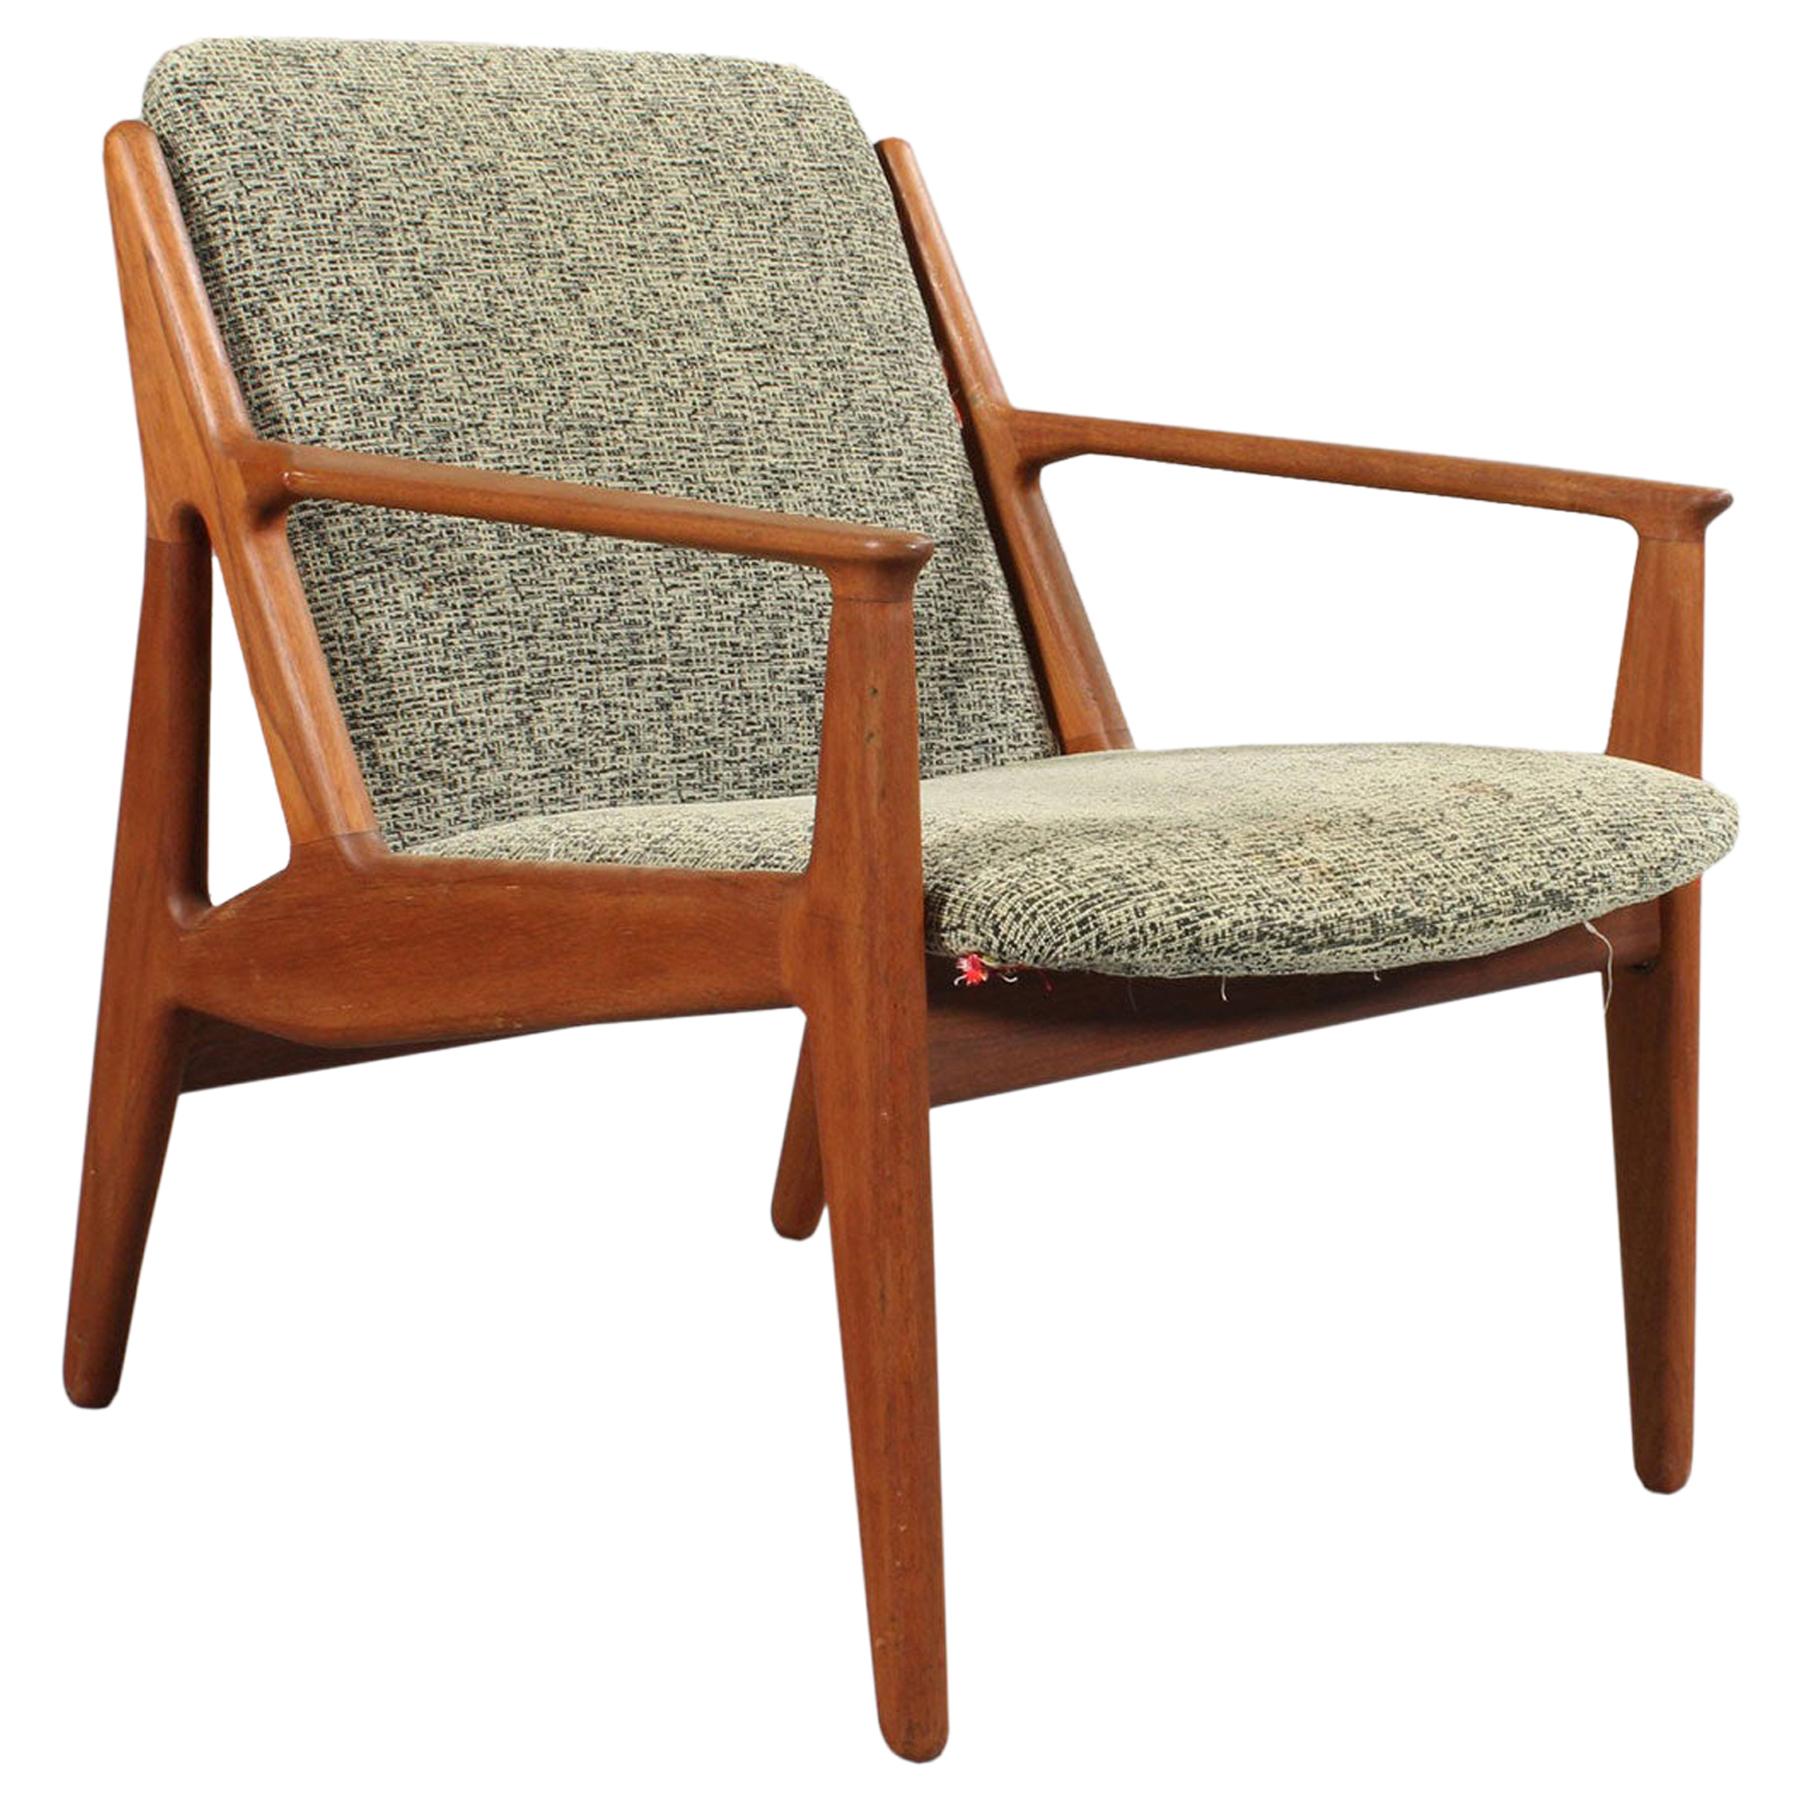 Arne Vodder Danish Modern "Ellen" Lounge Chair in Teak